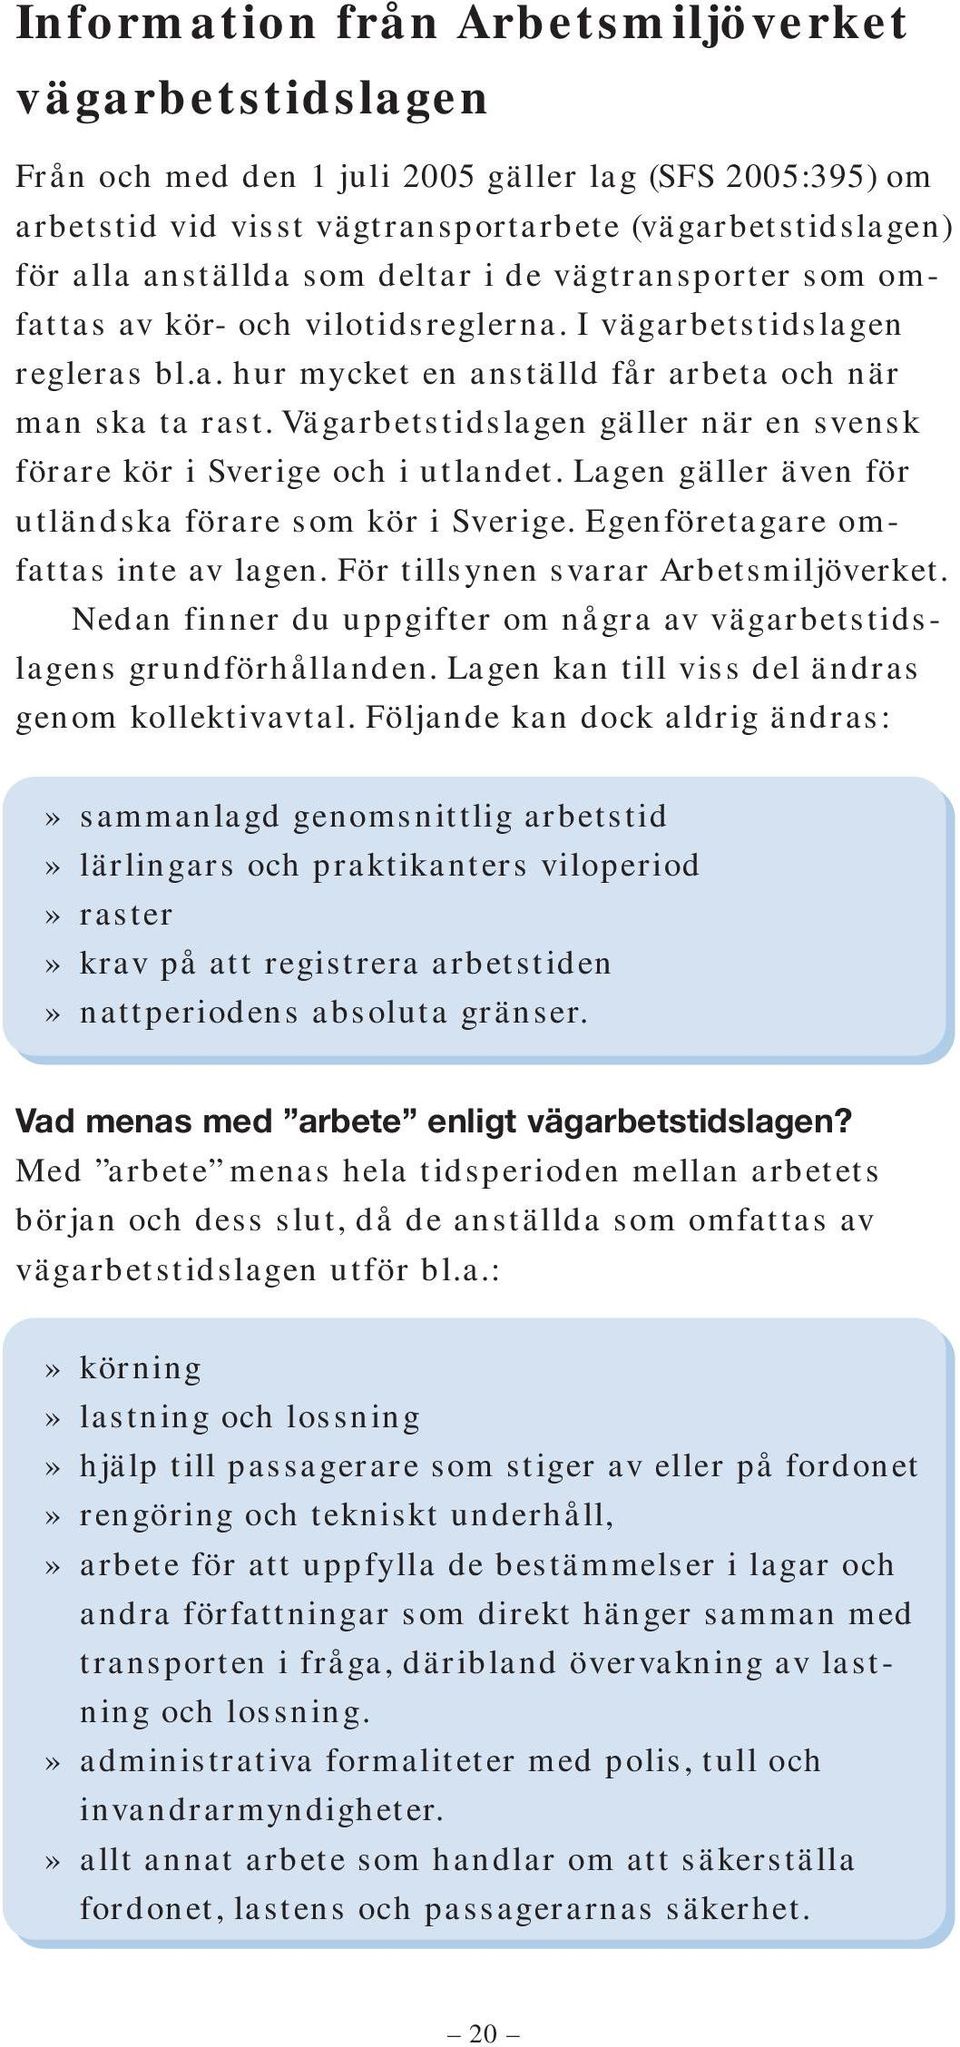 Vägarbetstidslagen gäller när en svensk förare kör i Sverige och i utlandet. Lagen gäller även för utländska förare som kör i Sverige. Egenföretagare omfattas inte av lagen.